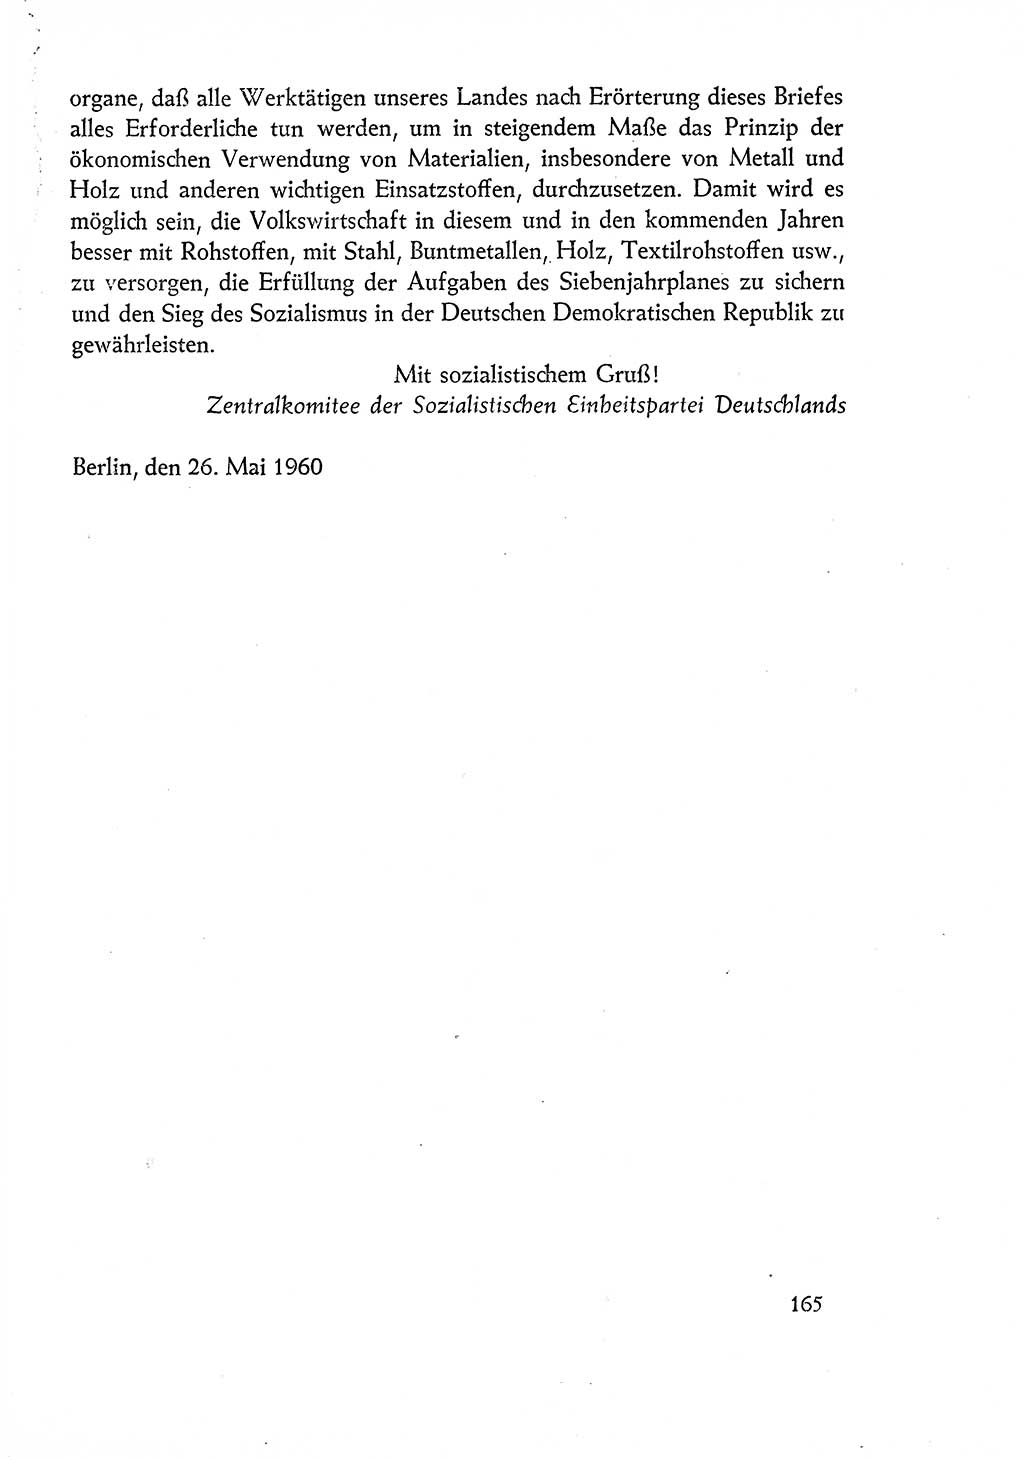 Dokumente der Sozialistischen Einheitspartei Deutschlands (SED) [Deutsche Demokratische Republik (DDR)] 1960-1961, Seite 165 (Dok. SED DDR 1960-1961, S. 165)